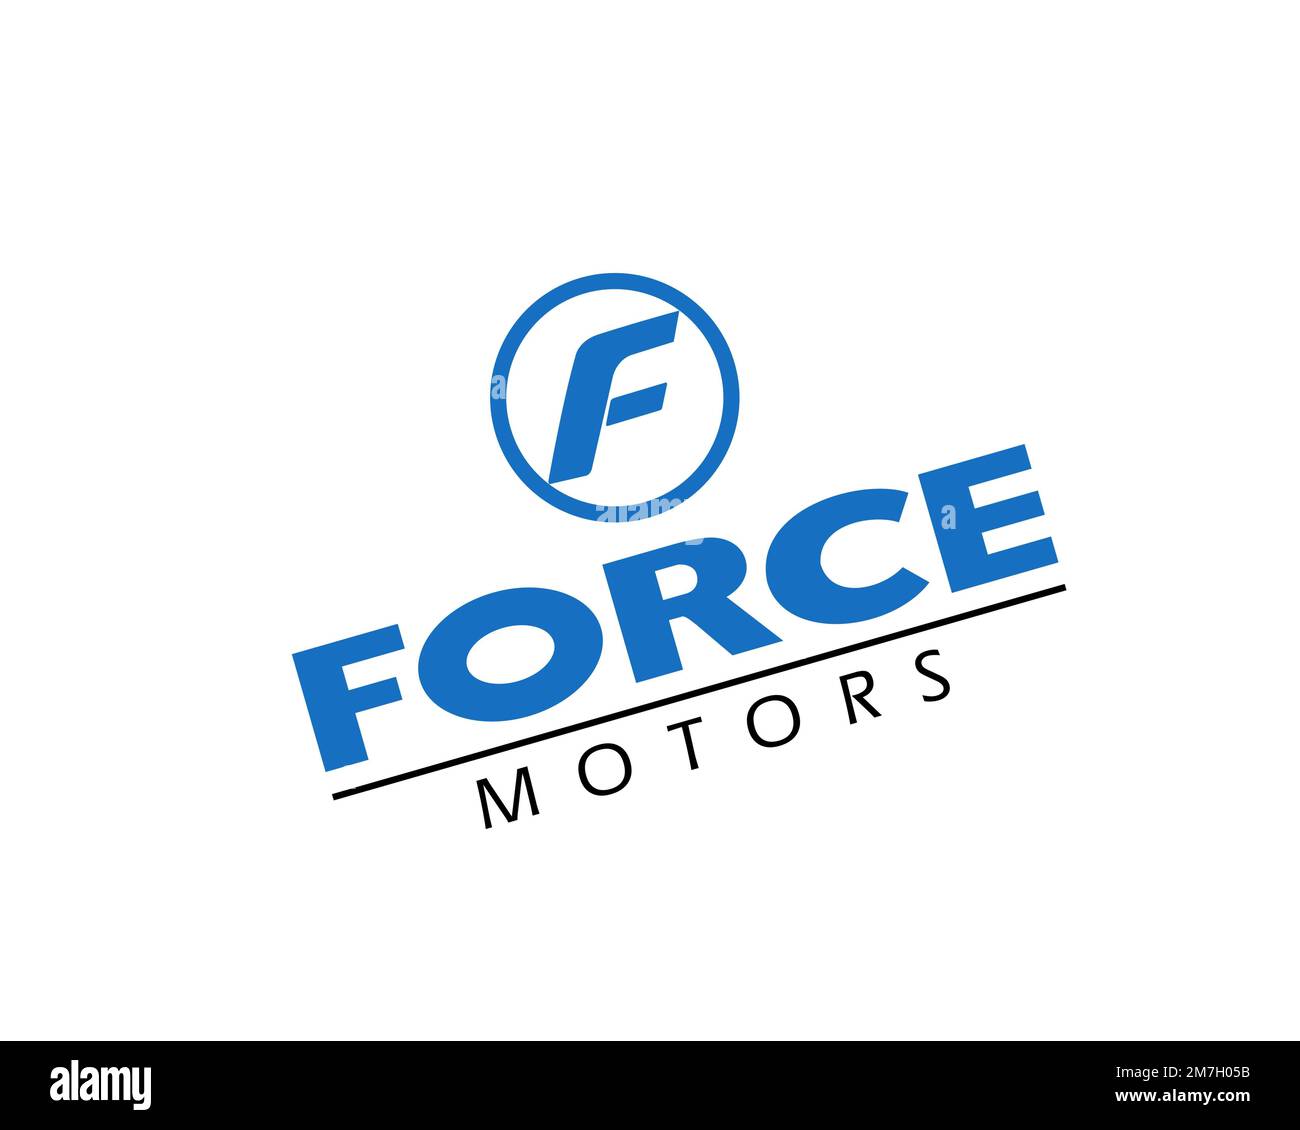 Download Force Motors Logo in SVG Vector or PNG File Format - Logo.wine